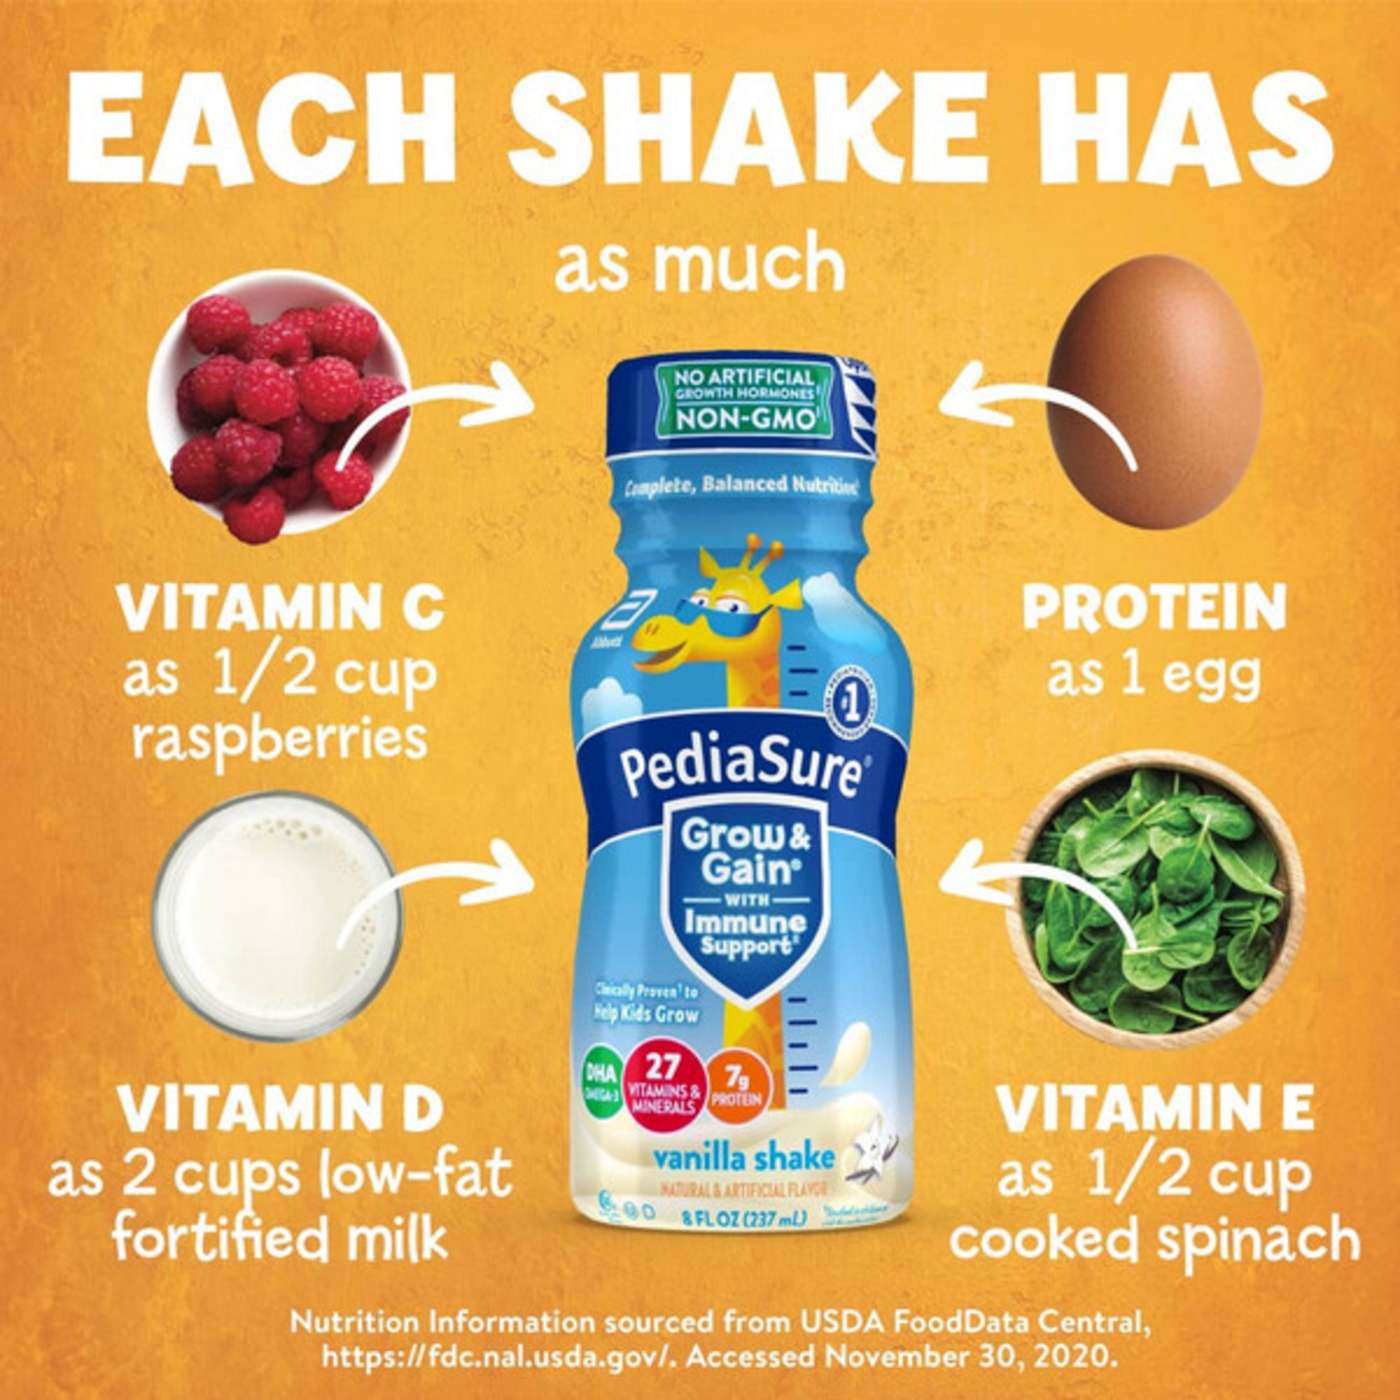 PediaSure Grow & Gain with Immune Support Shake - Vanilla; image 2 of 4